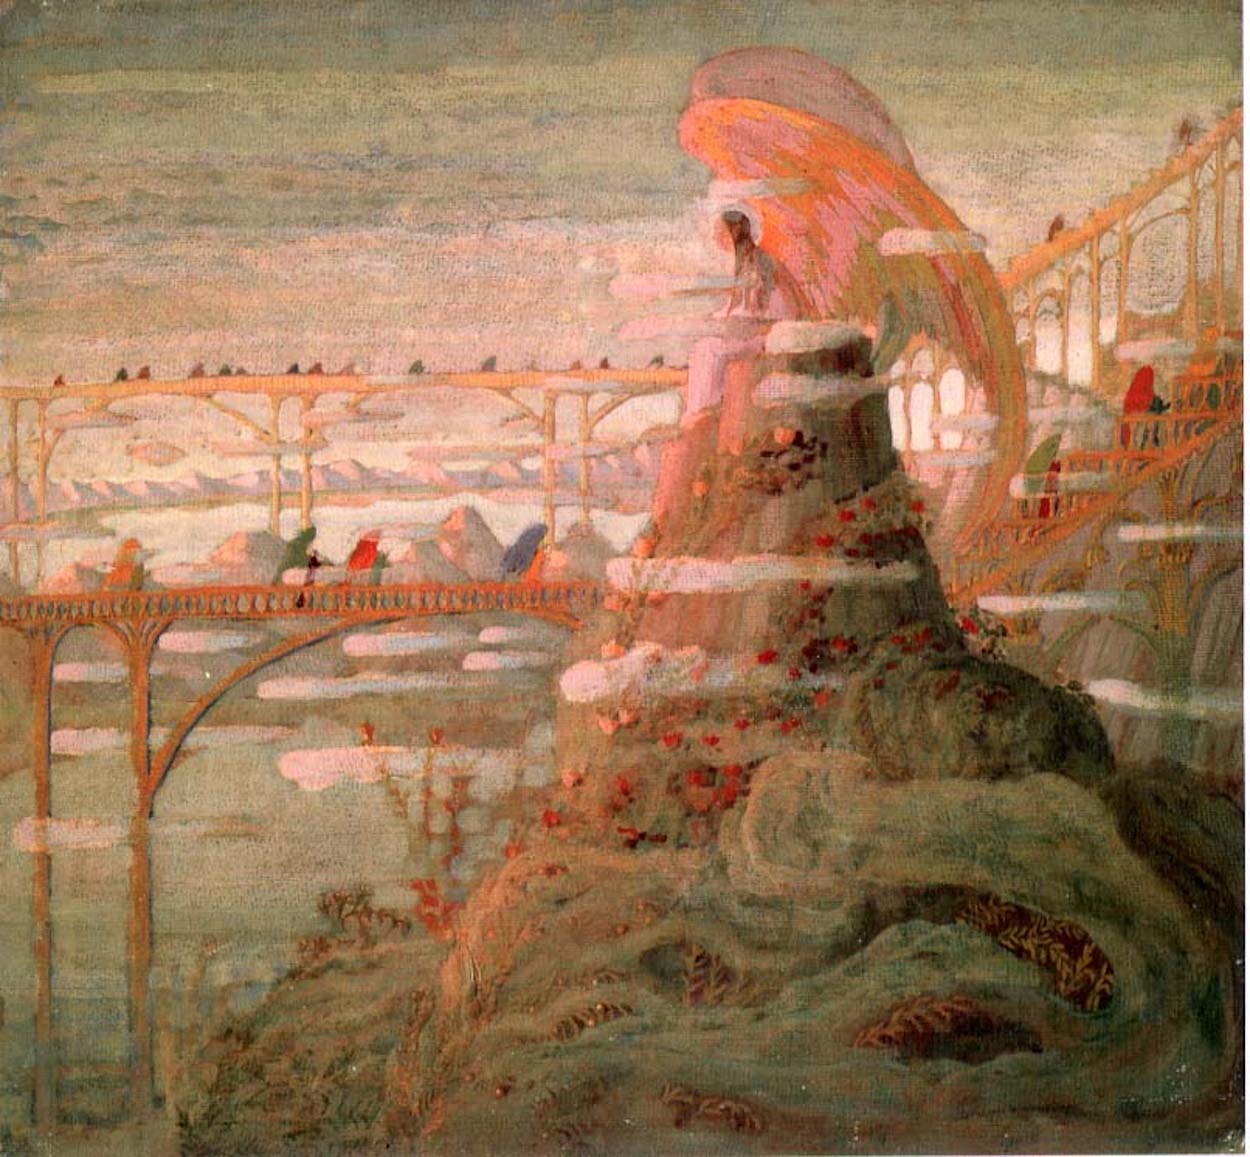 Engel (Aankondiging van de engel) by Mikalojus Konstantinas Čiurlionis - 1909 - 50 x 53,7 cm M. K. Čiurlionis Nationaal Kunstmuseum